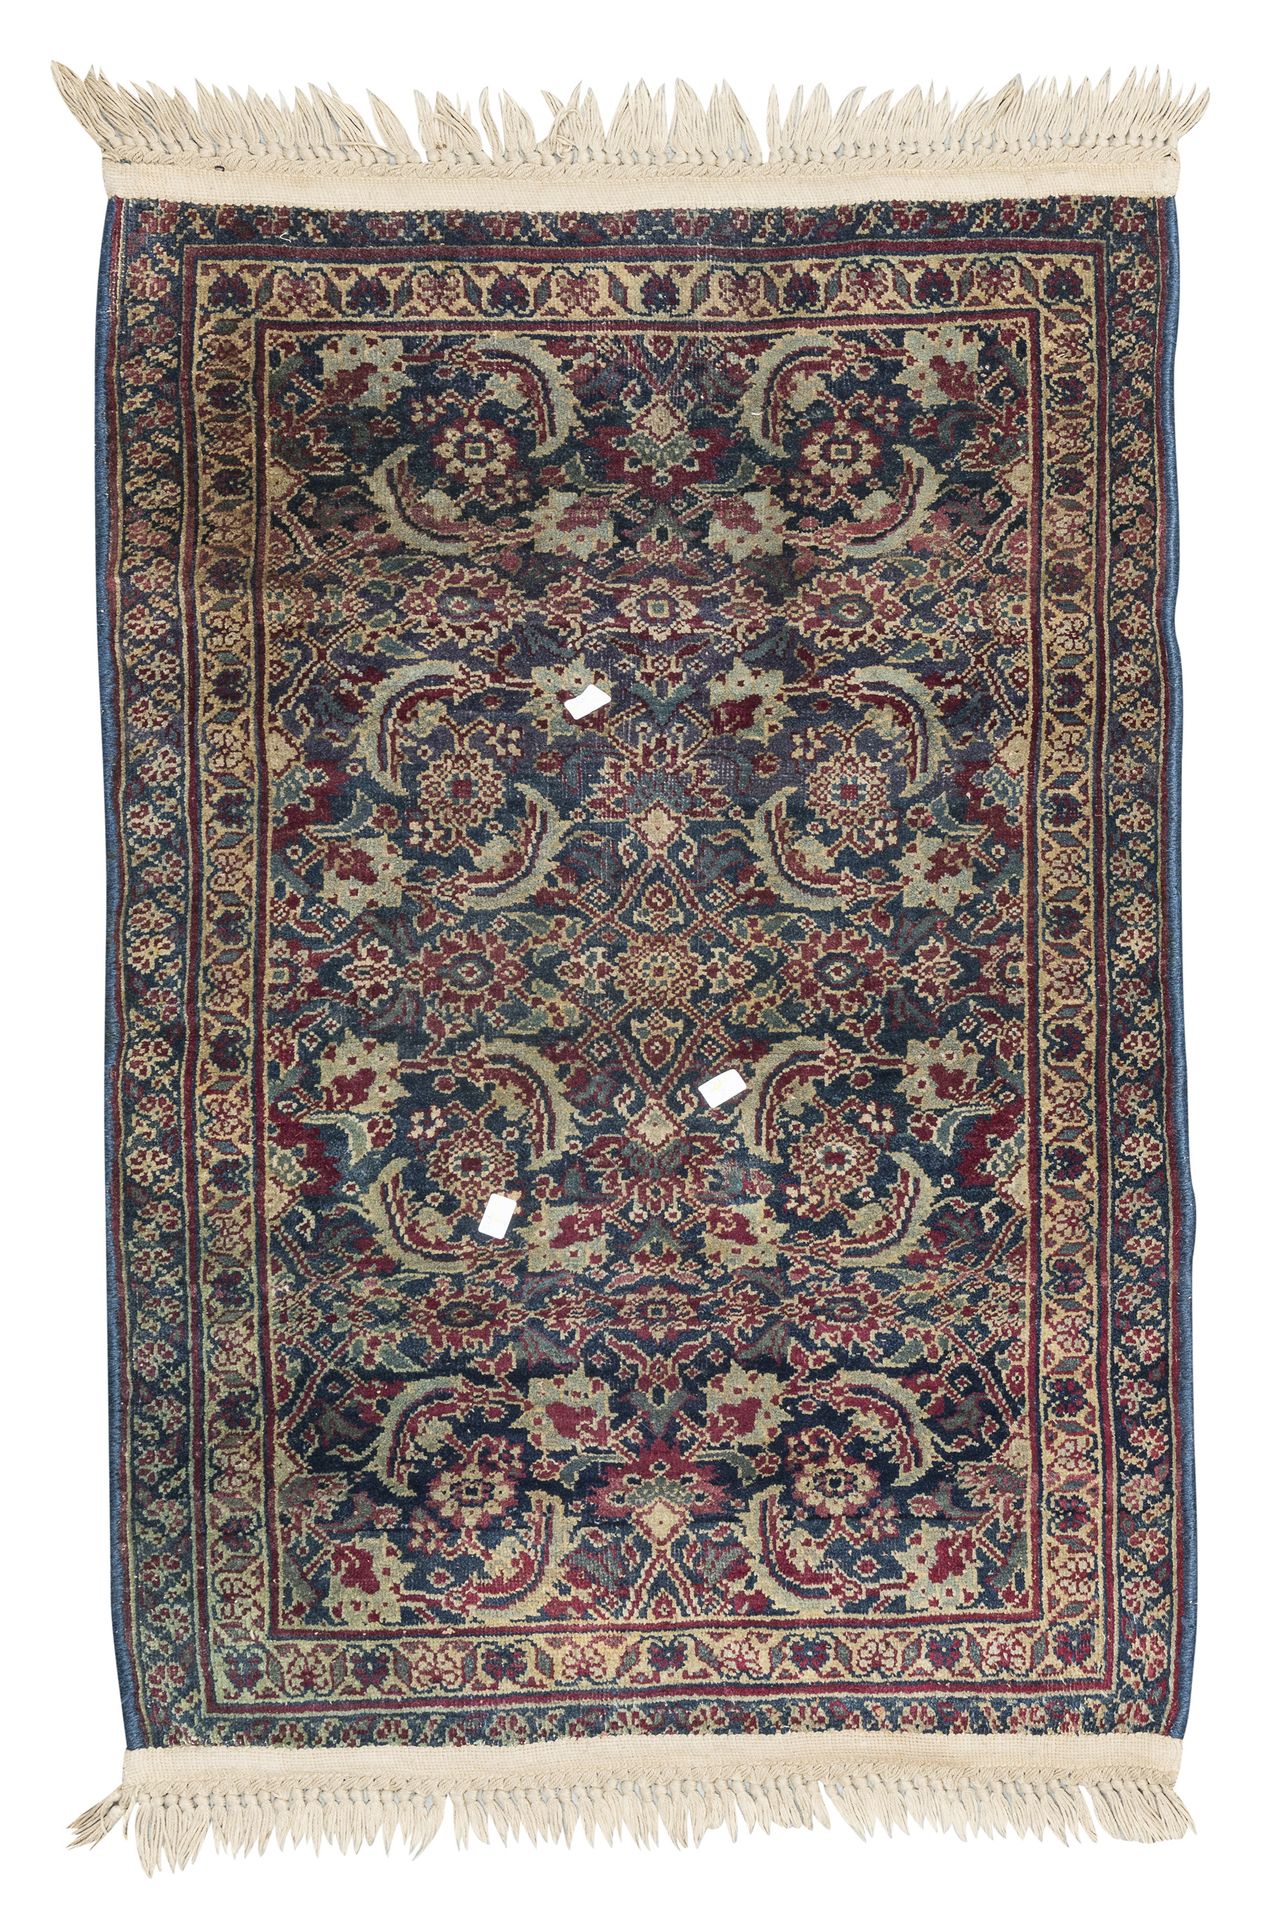 Null 罕见的费拉汉地毯，20世纪初


蓝底中央区域有一朵依次排列的花朵的双花纹设计。


尺寸为109 x 70厘米。